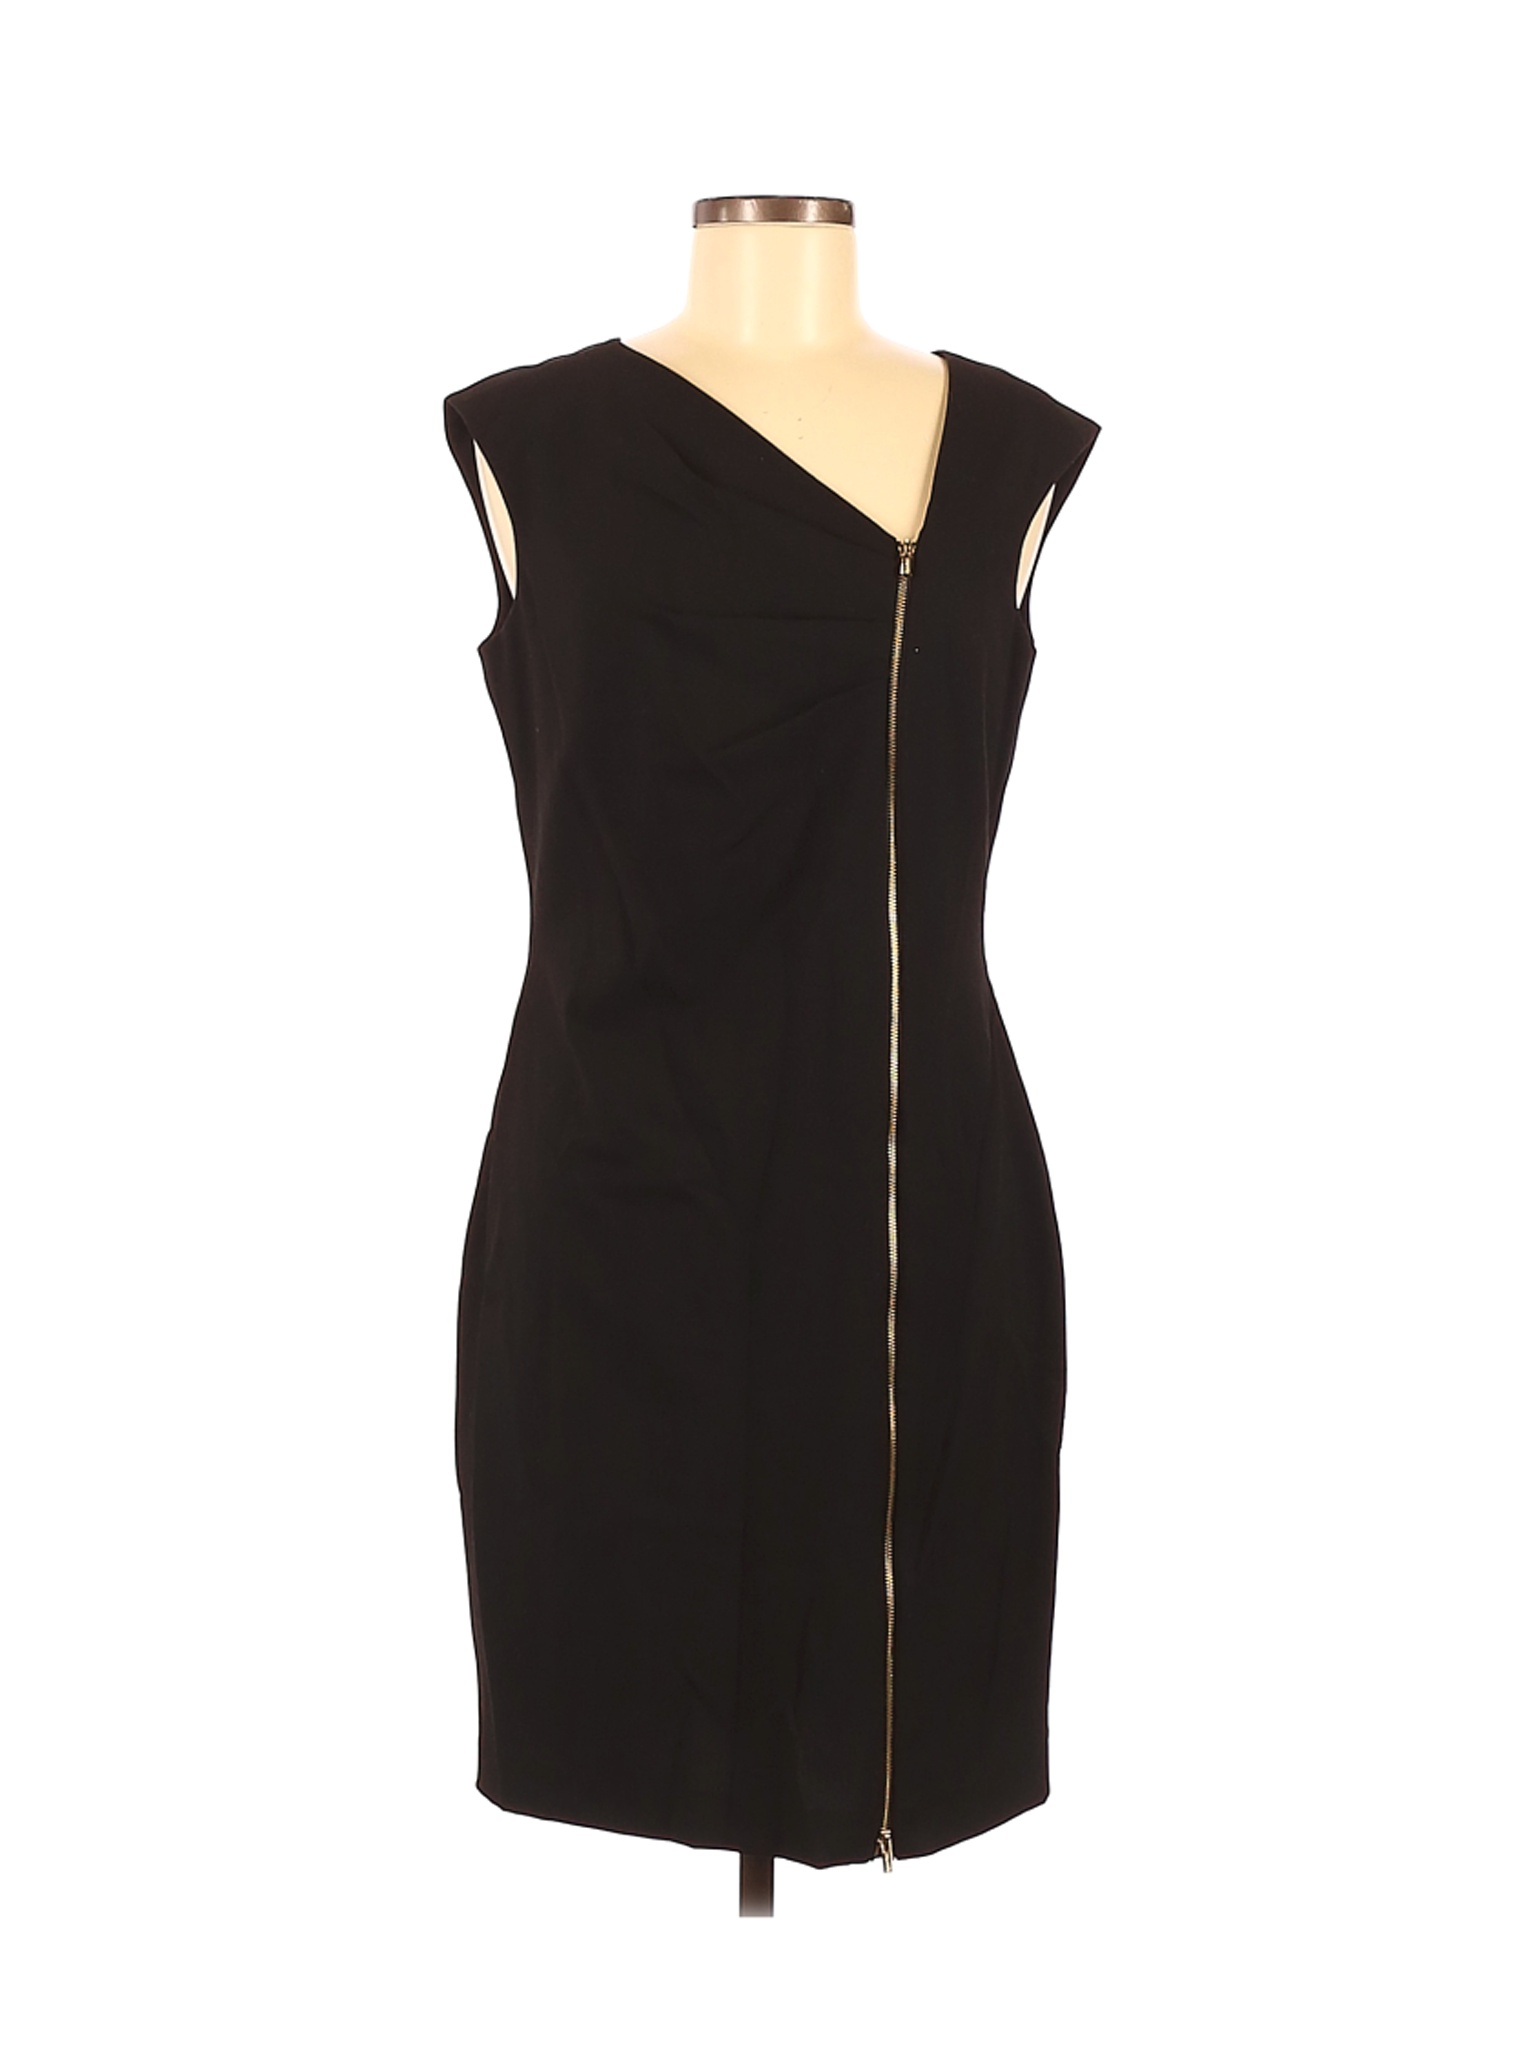 Calvin Klein Women Black Cocktail Dress 8 | eBay